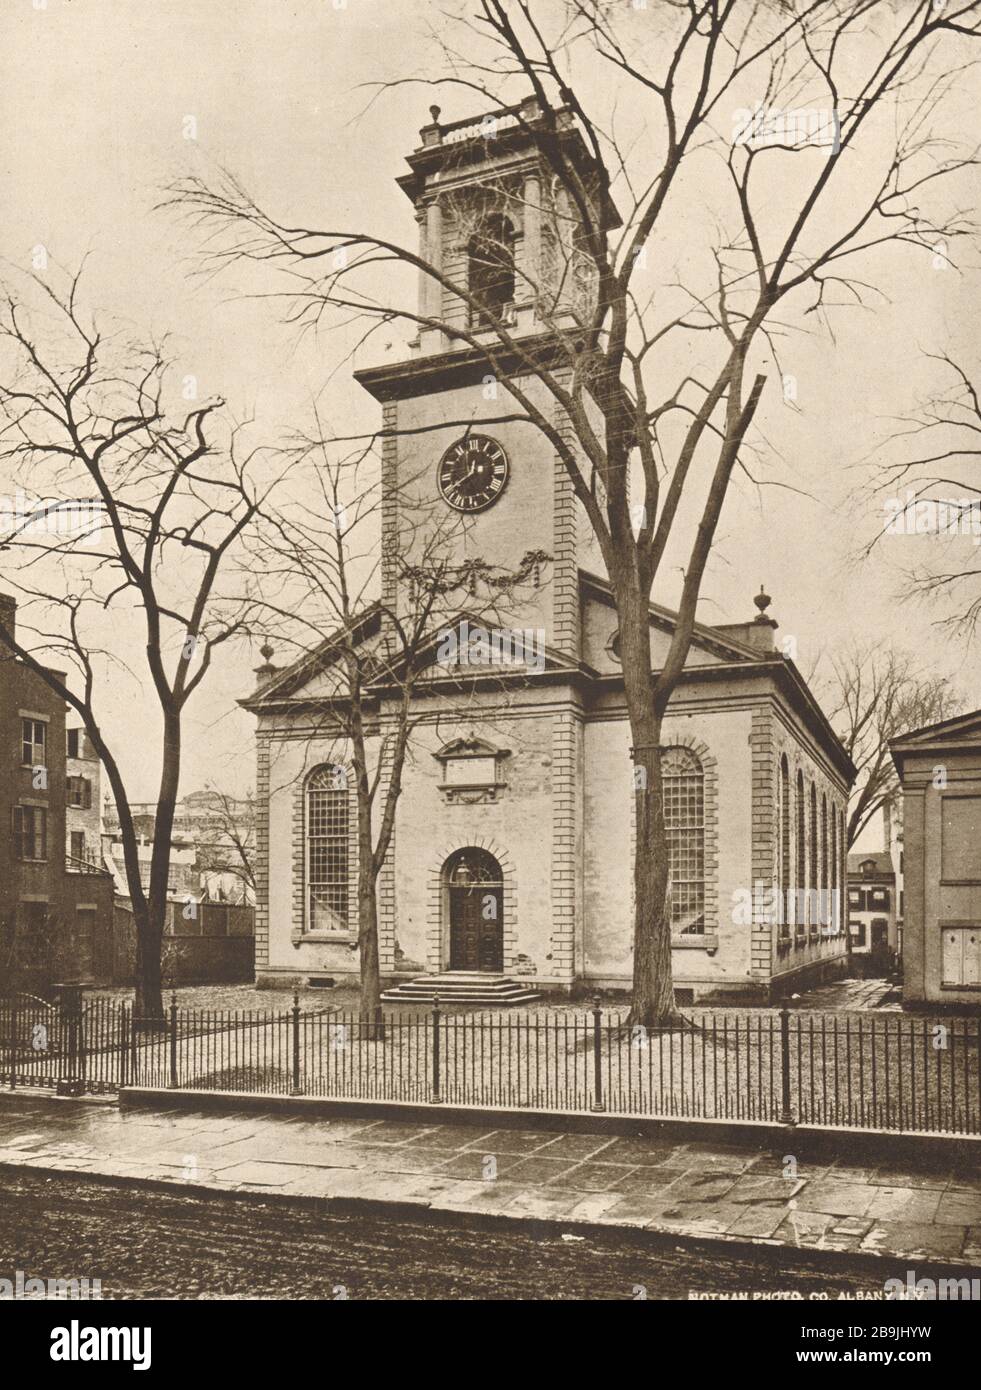 La deuxième église réformée, la façade de Beaver Street, Albany, New York. Restauré par John L. Dykerman, 1918. Philip Hooker, Architecte (1919) Banque D'Images